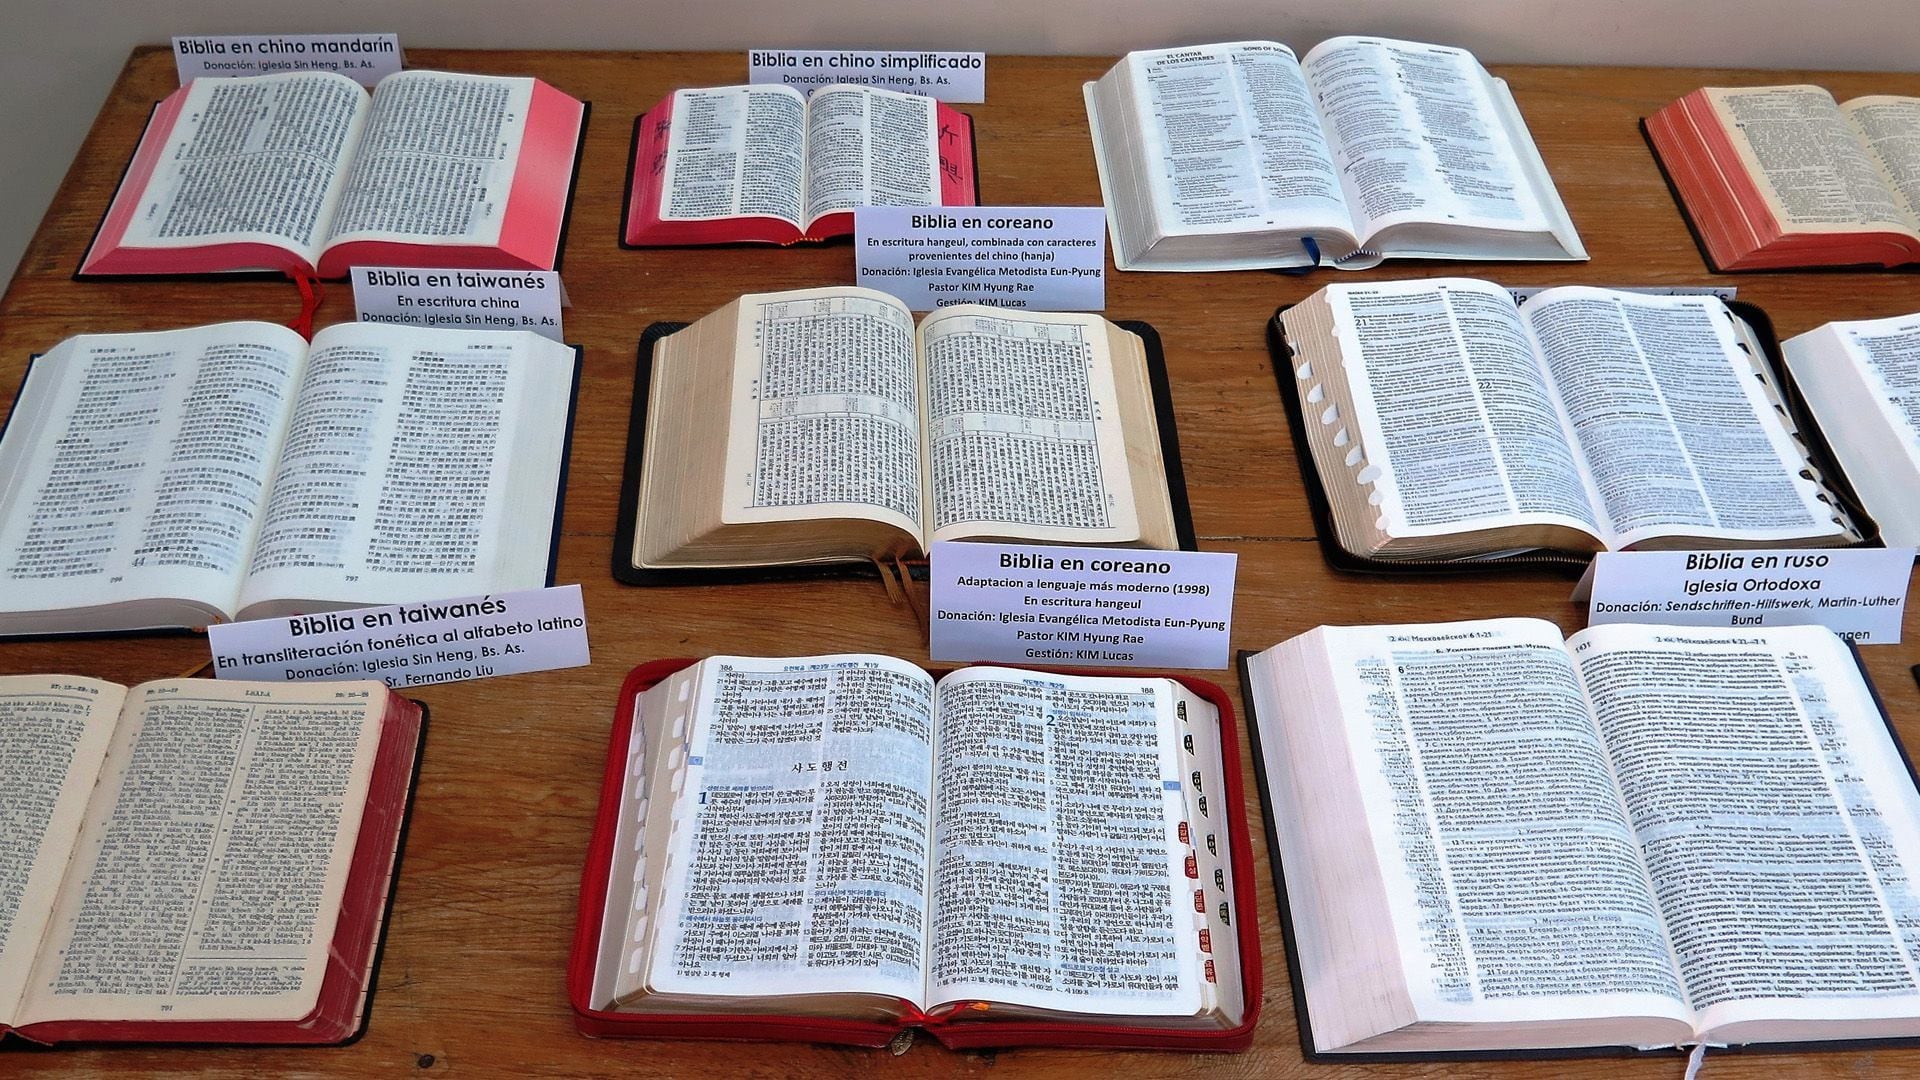 El evangelio y las lecturas son pasajes de la Biblia. (René Krüger) 